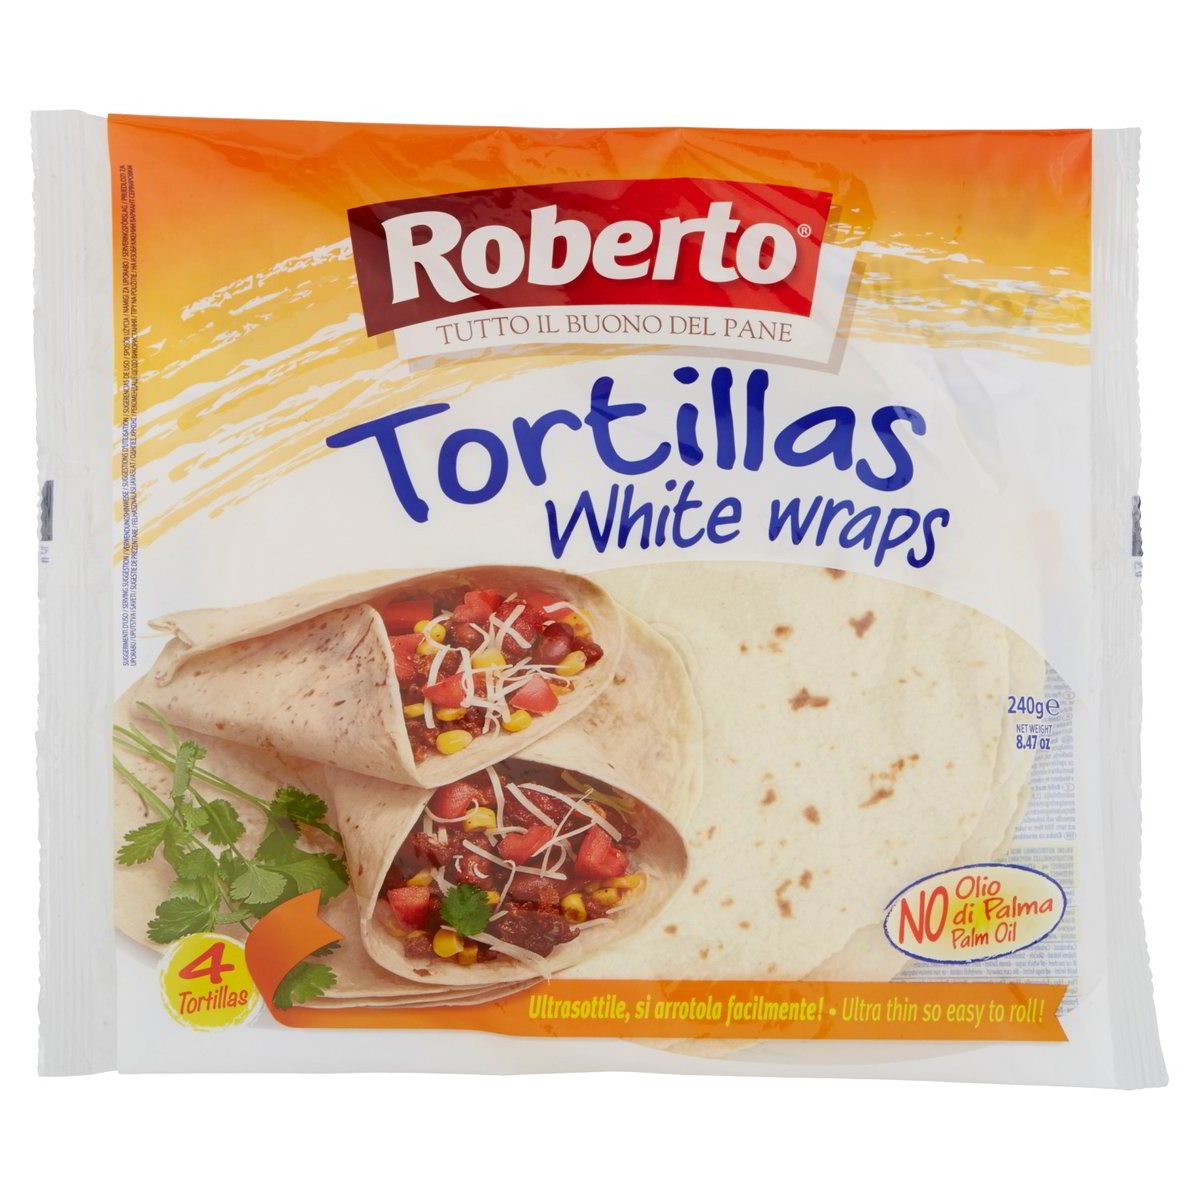 Tortillas White Wraps